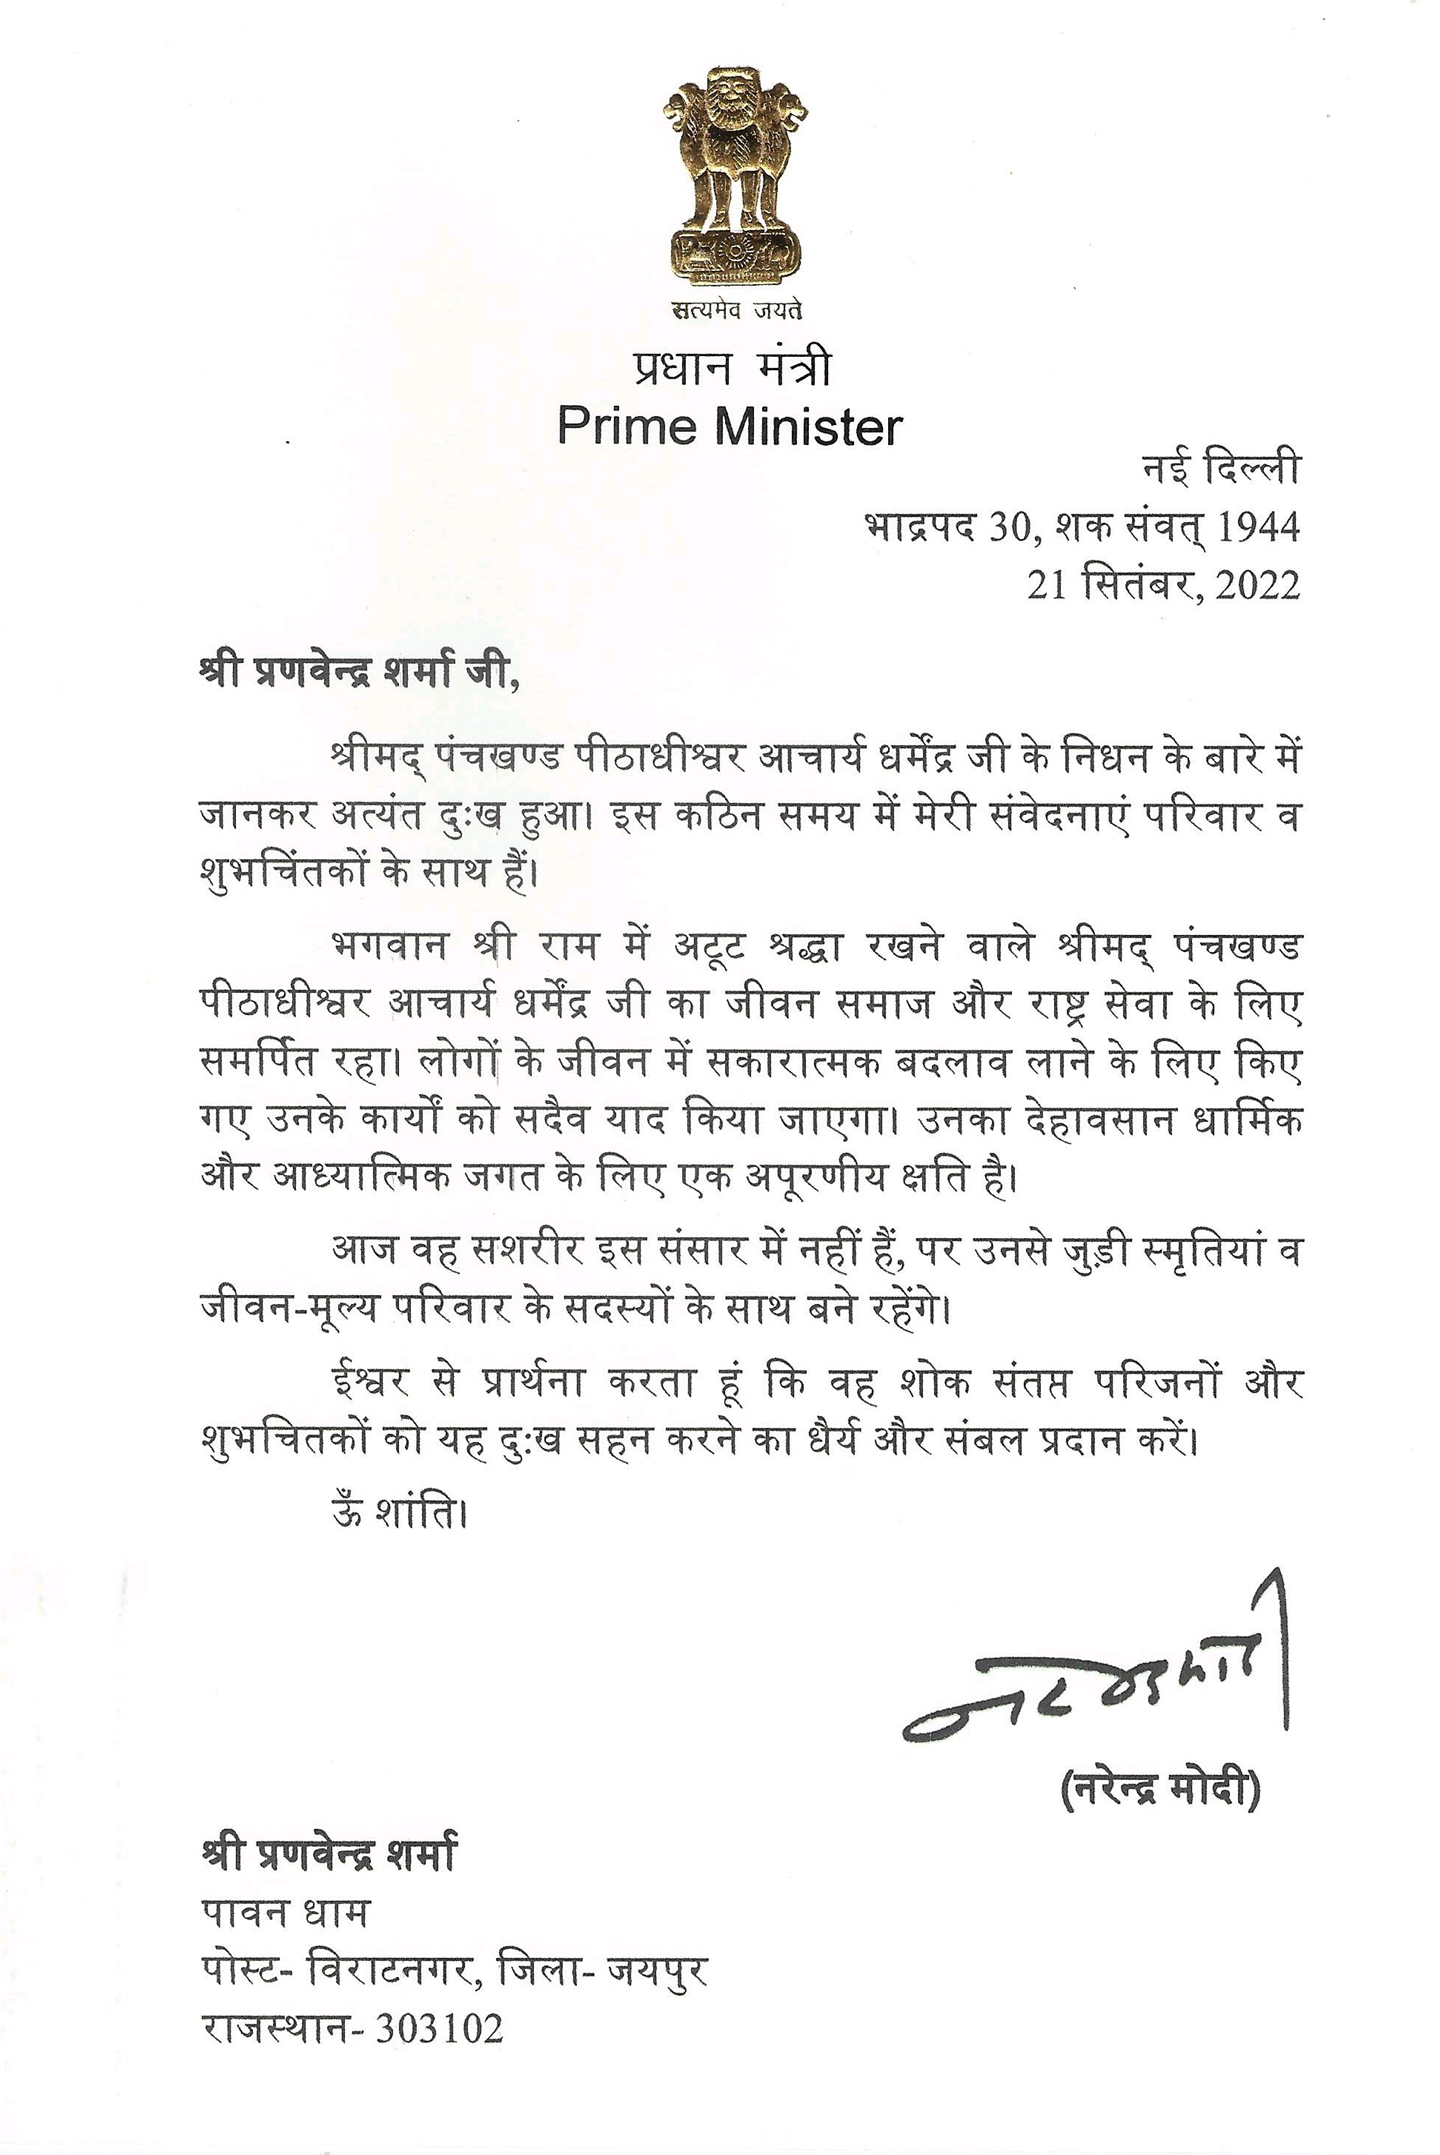 PM Modi sent condolence message